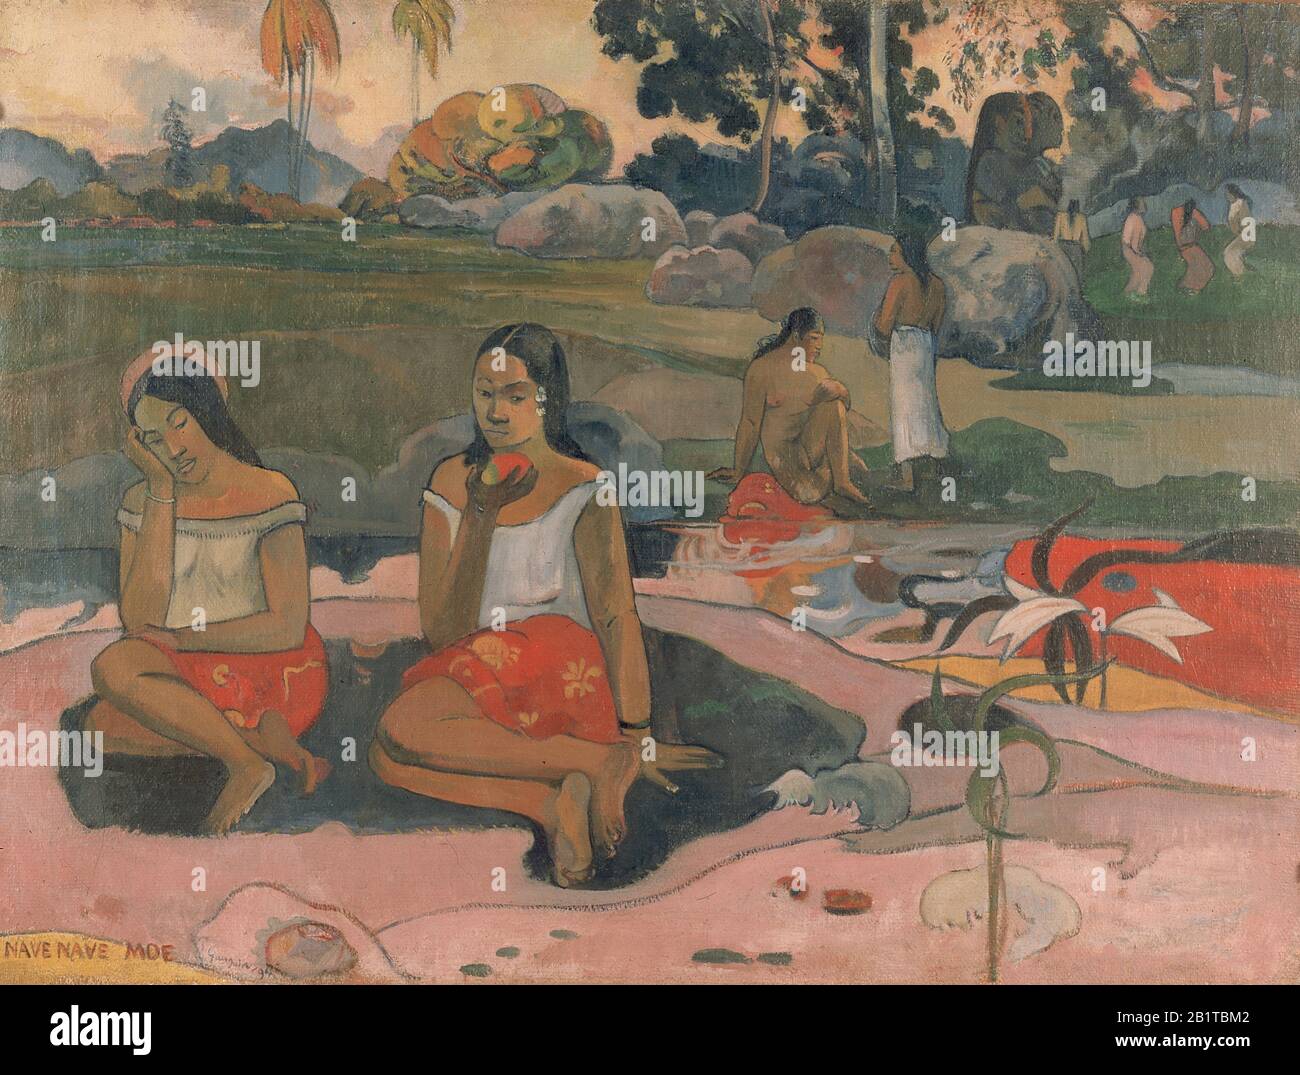 ) Pittura 19th Secolo di Paul Gauguin - immagine Ad Altissima risoluzione e di qualità Foto Stock